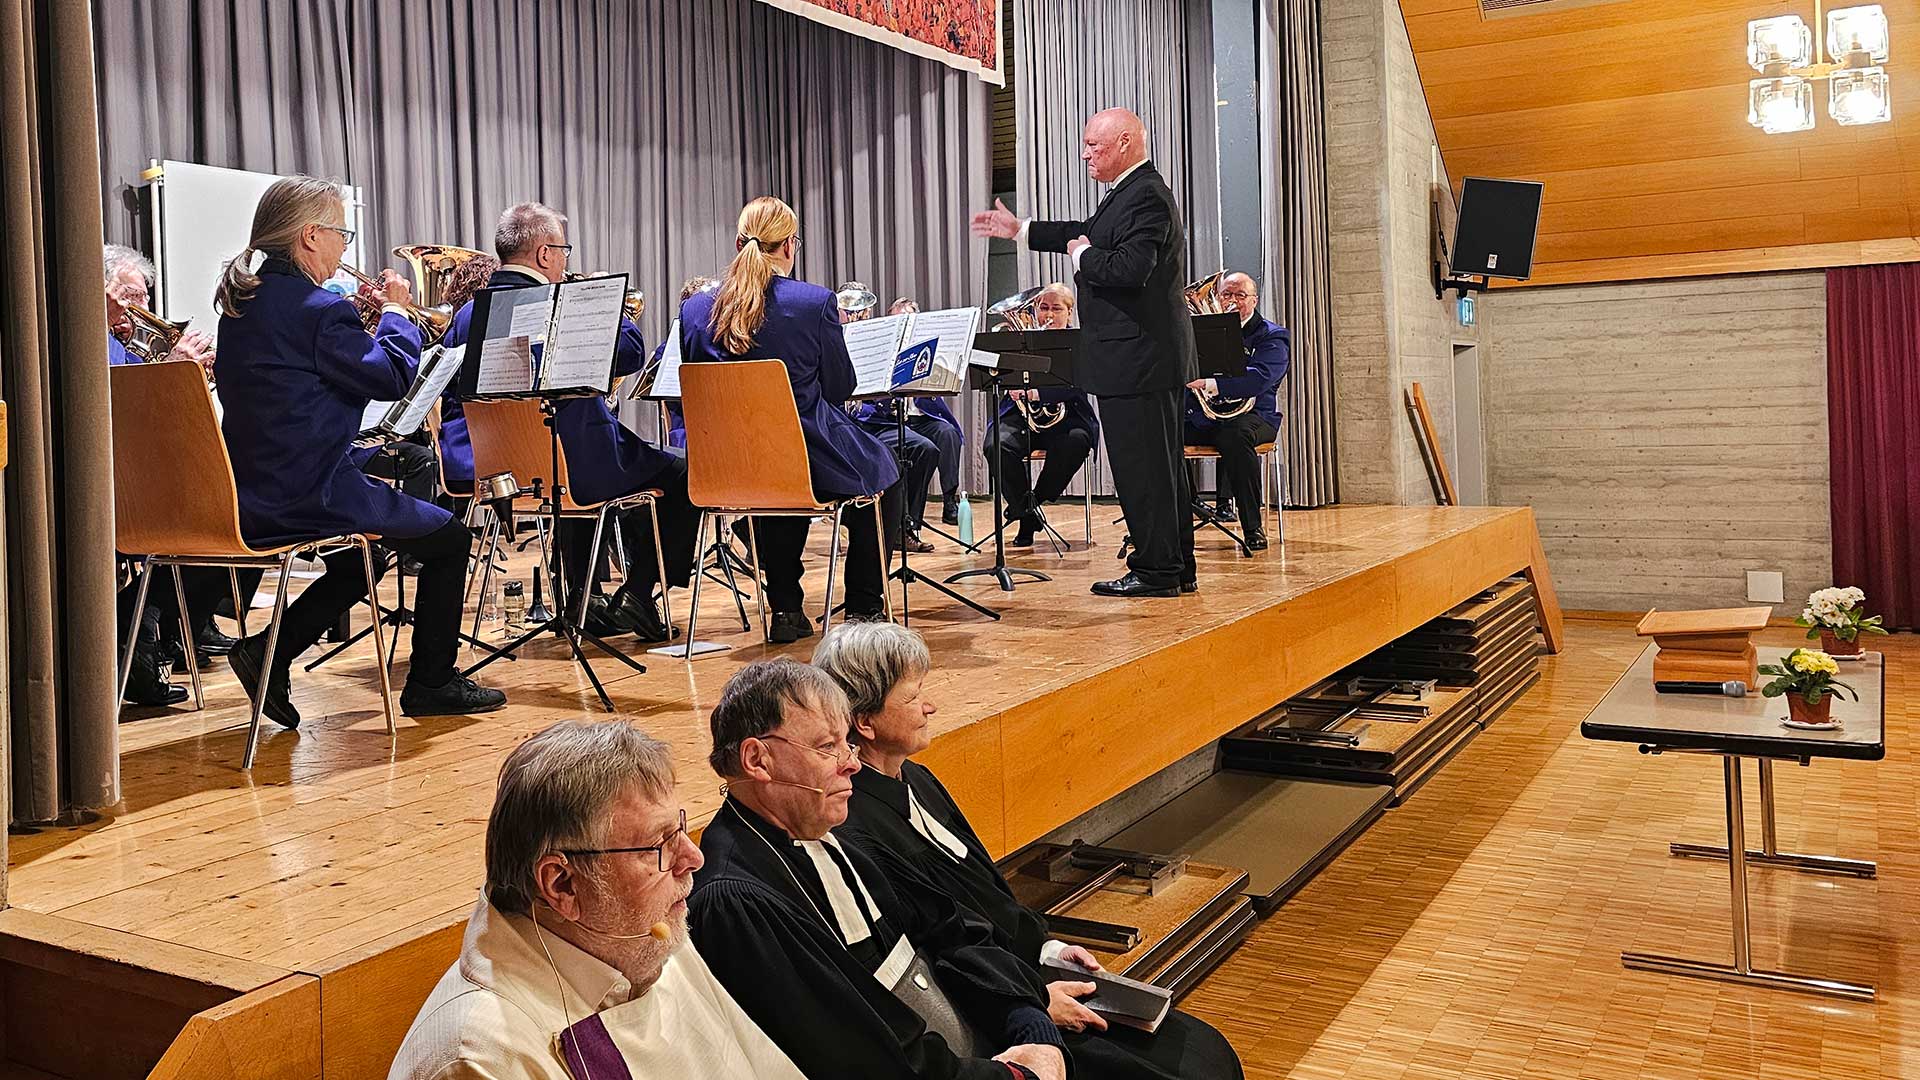 Musikverein Schlatt